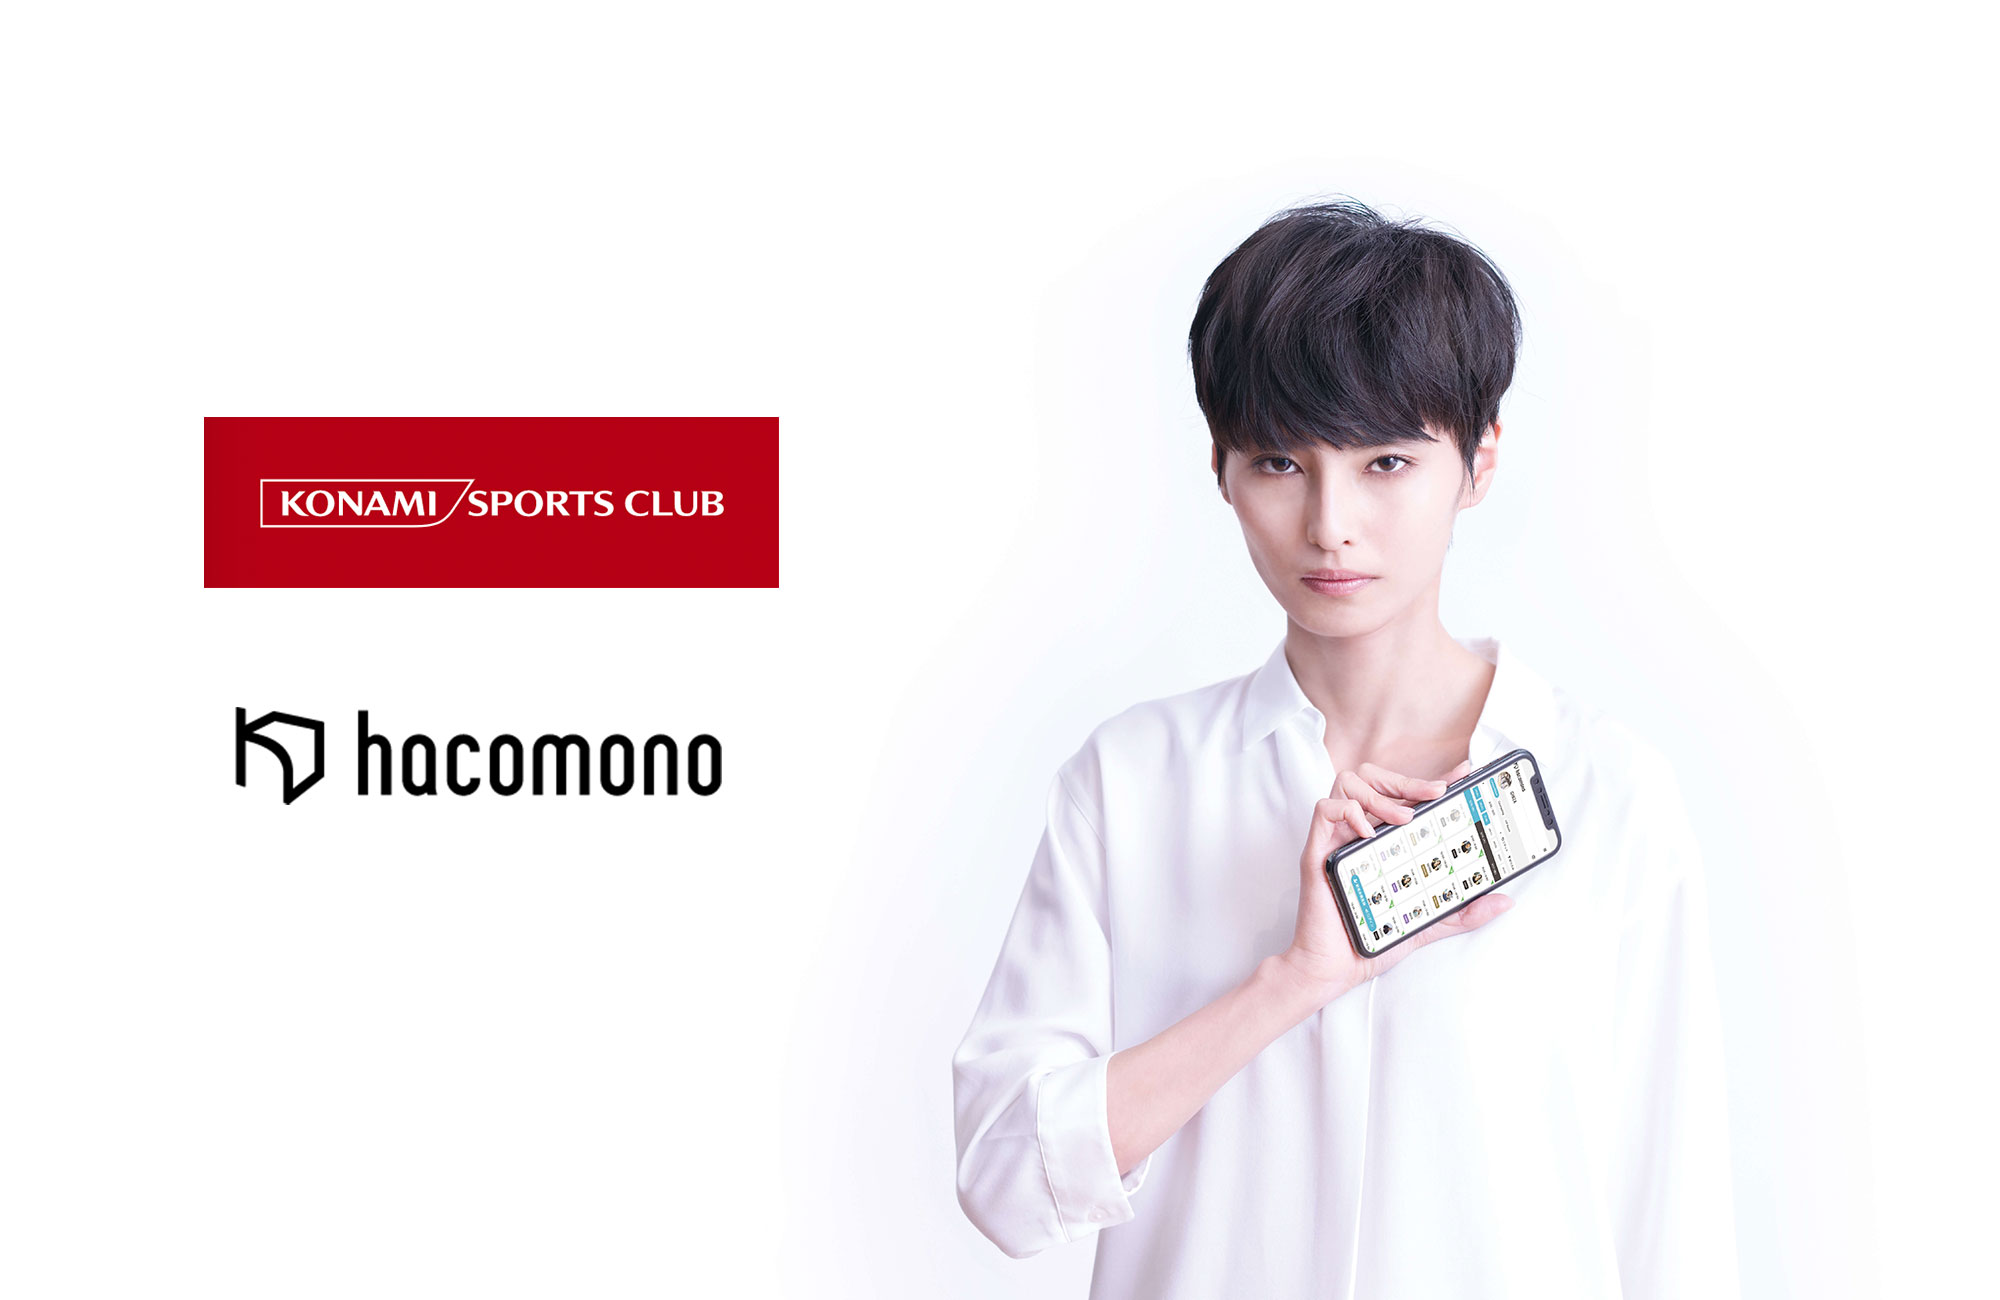 コナミスポーツクラブの会員向けオンラインライブレッスン等で 予約 決済システム Hacomono 導入 株式会社hacomonoのプレスリリース